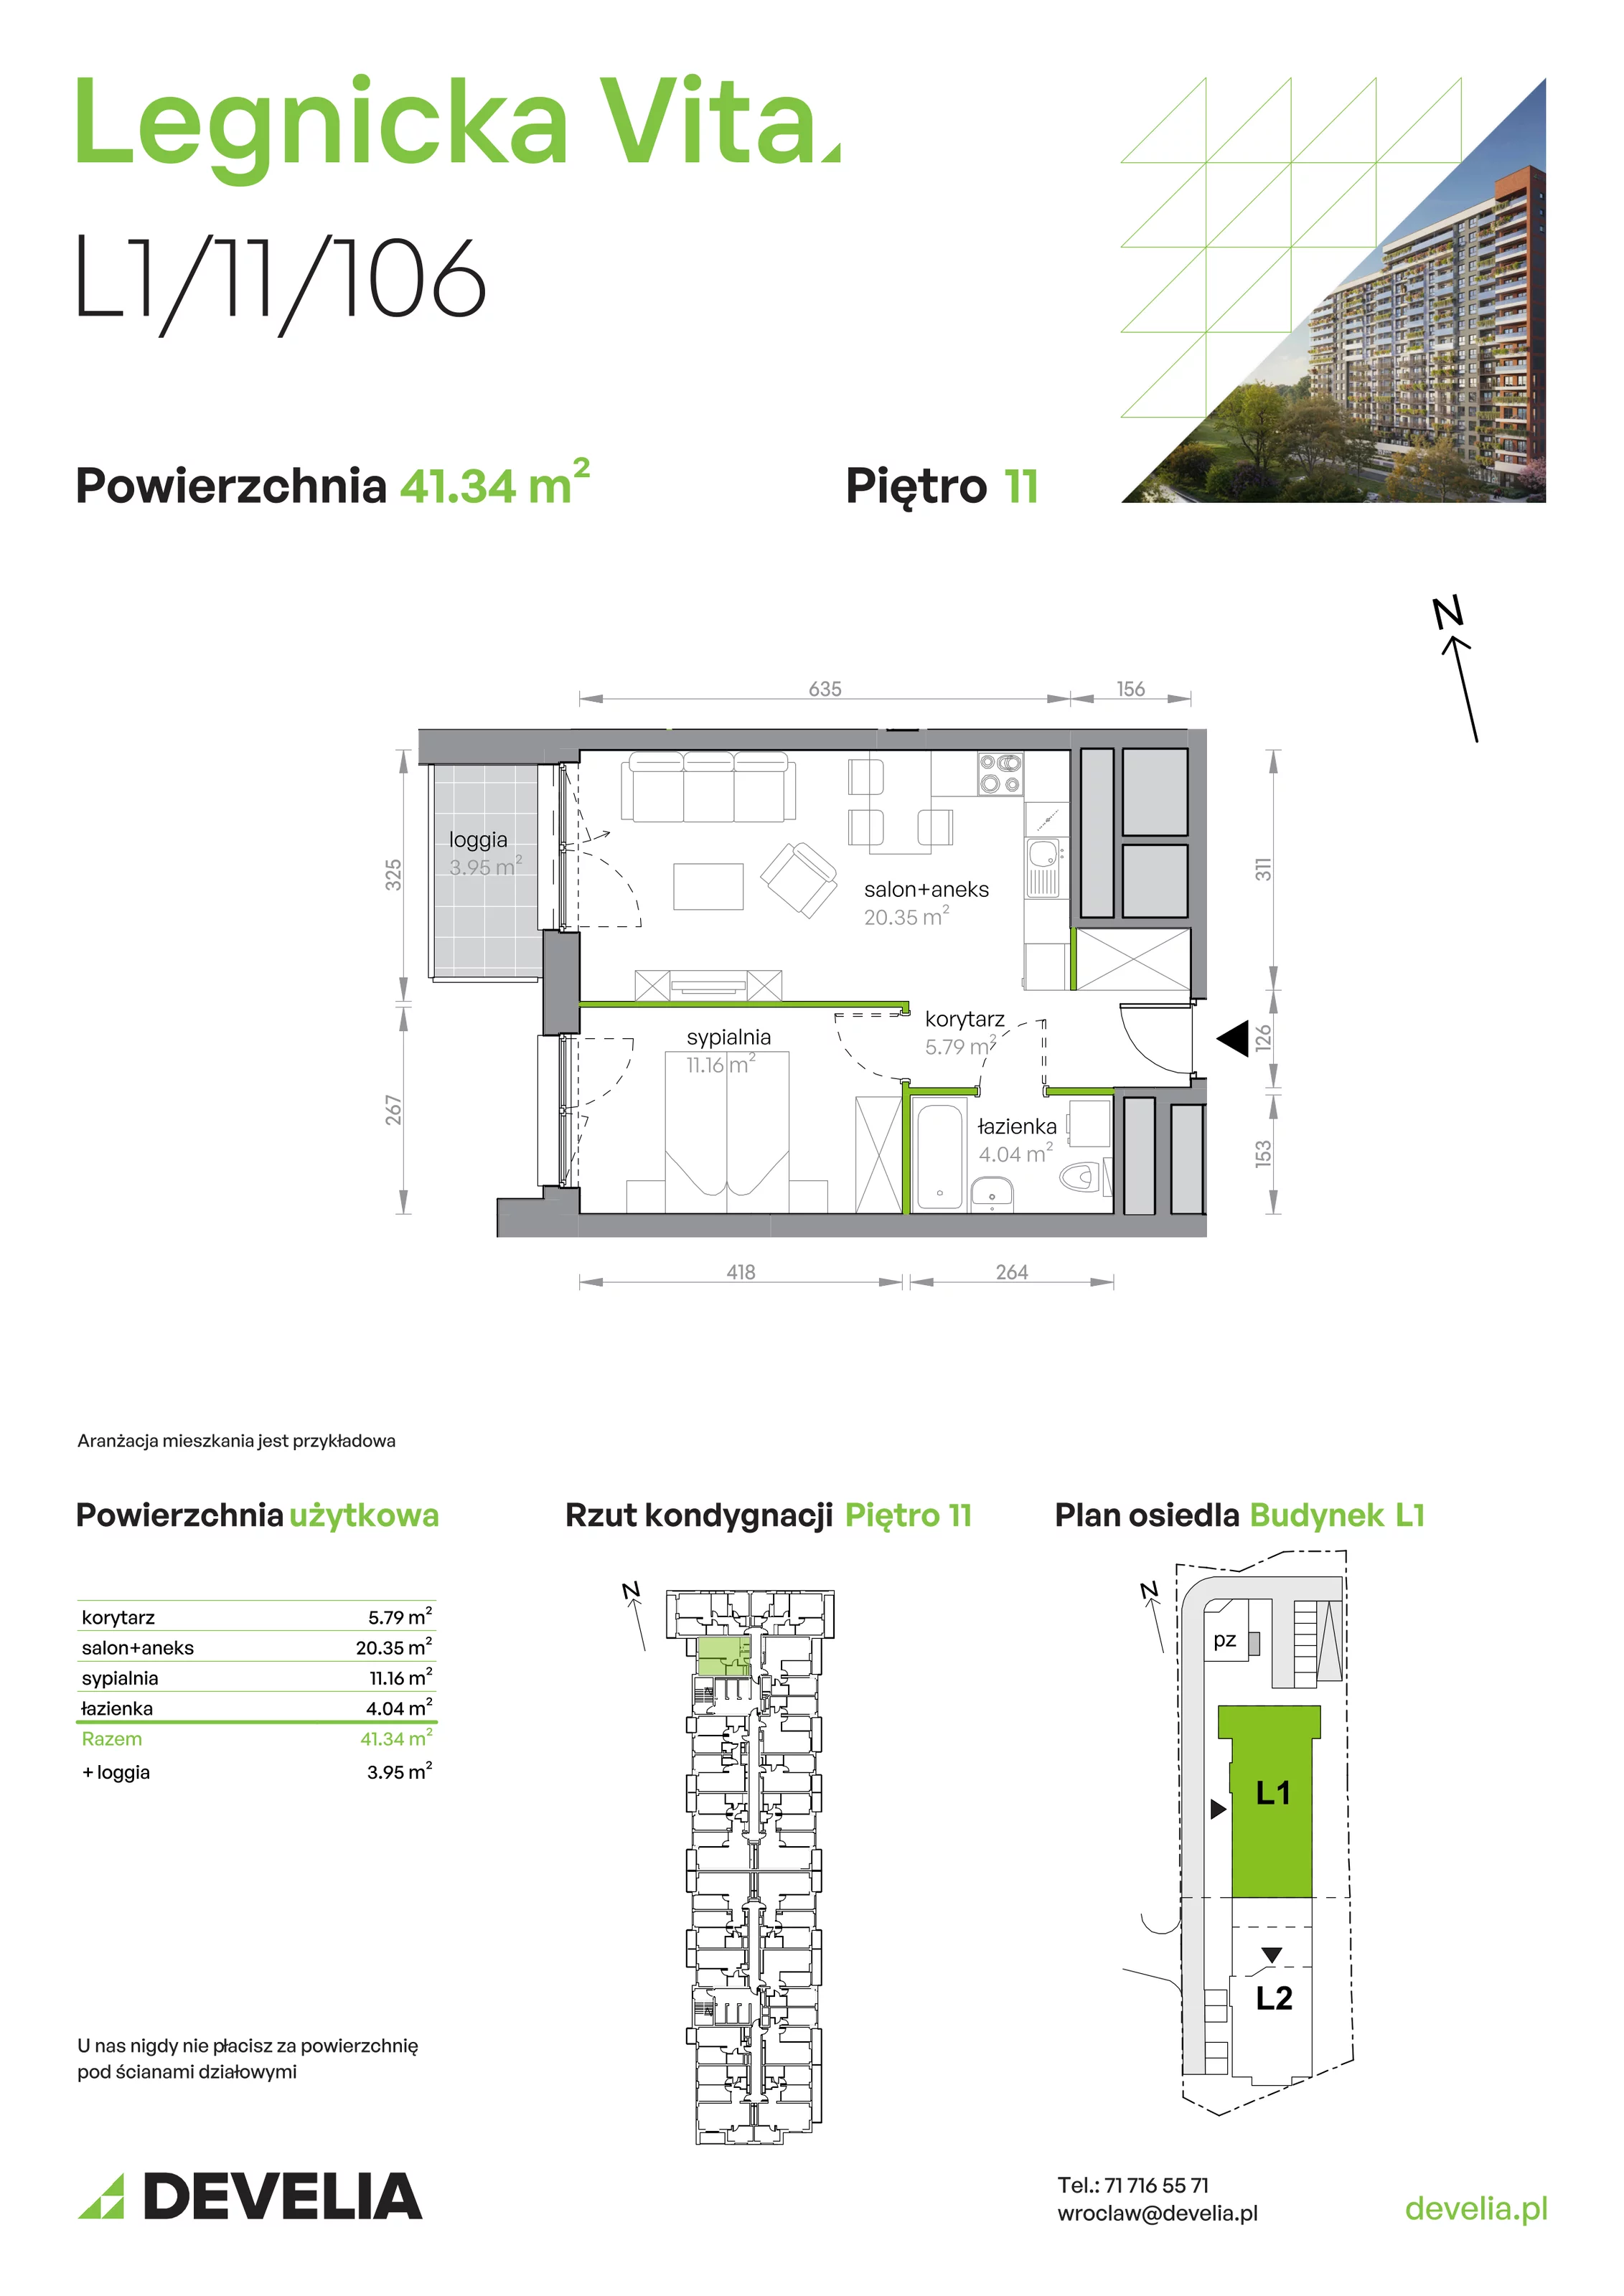 Mieszkanie 41,34 m², piętro 11, oferta nr L1/11/106, Legnicka Vita, Wrocław, Gądów-Popowice Południowe, Popowice, ul. Legnicka 52 A